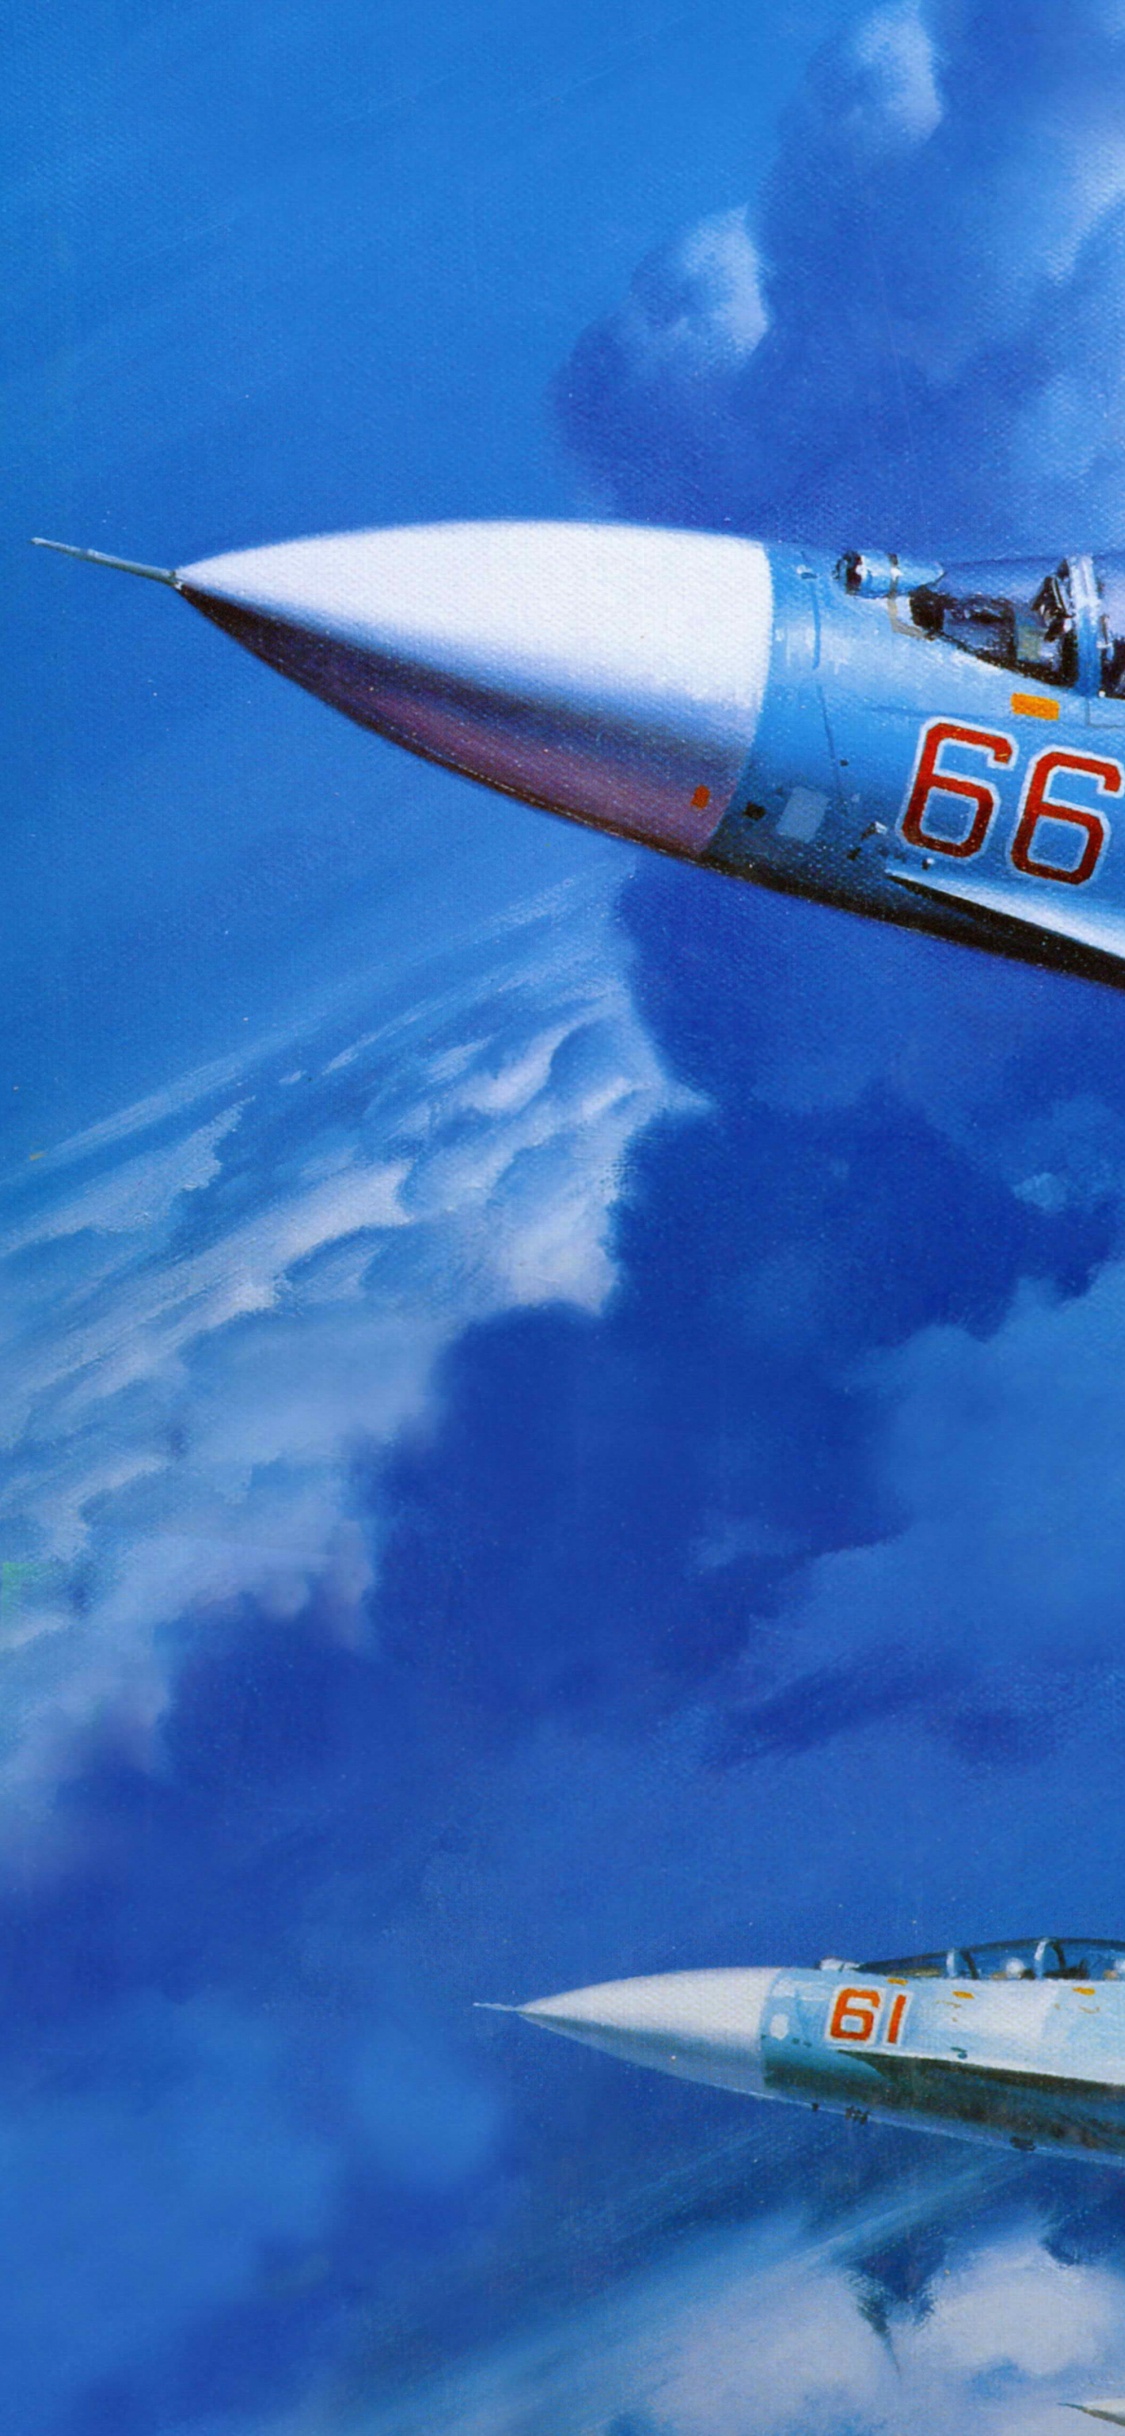 Weißes Und Blaues Düsenflugzeug Unter Blauem Himmel Tagsüber. Wallpaper in 1125x2436 Resolution